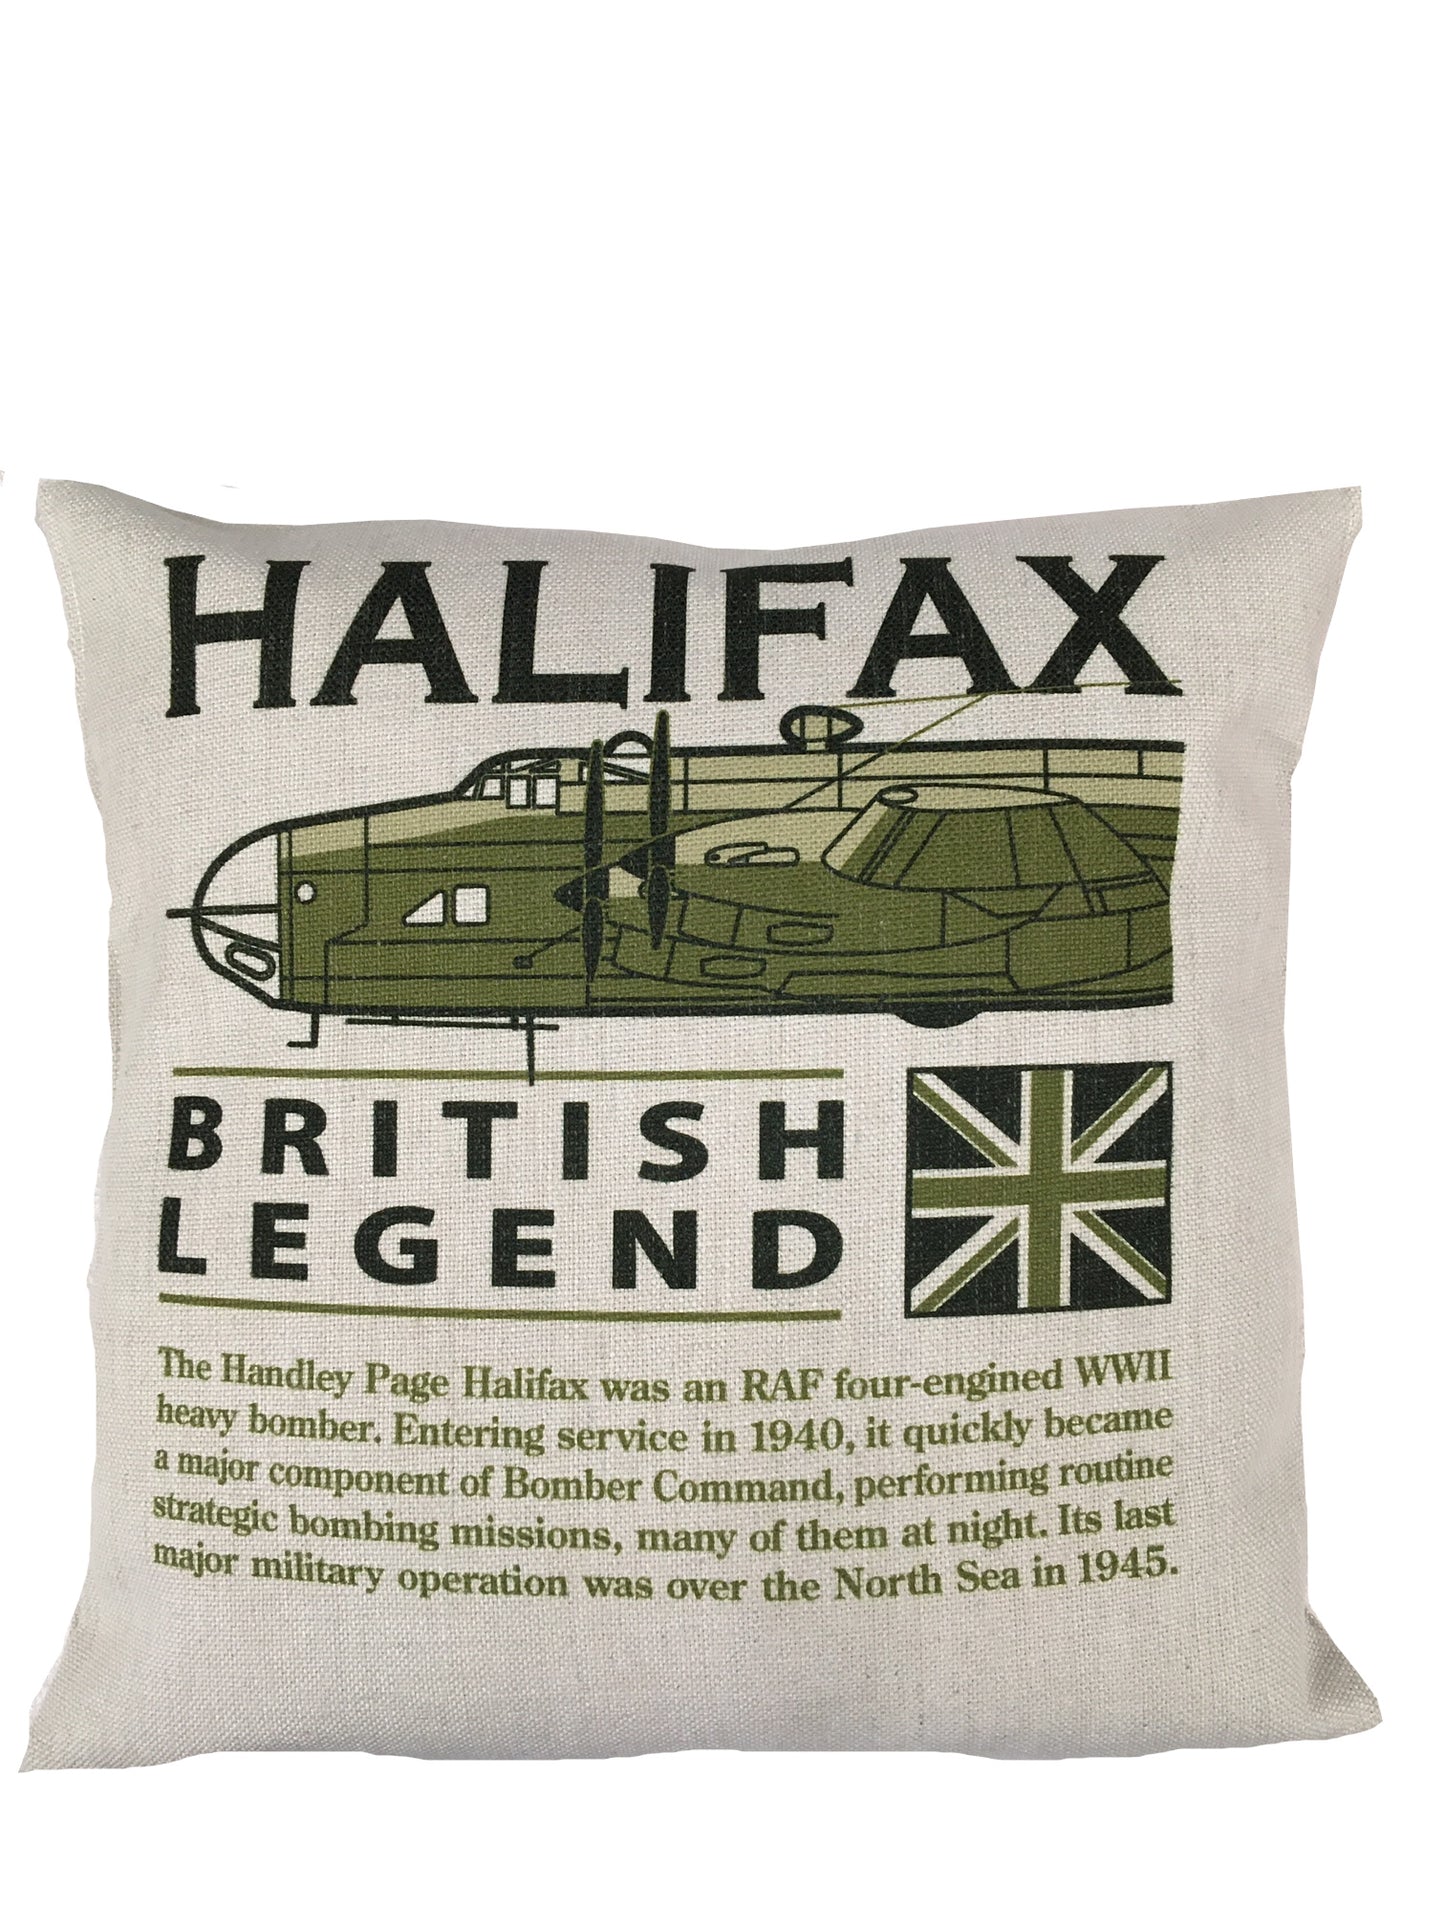 Handley Page Halifax WW11 RAF RCAF RAAF FFAF Four Engine Heavy Bomber Aircraft Cushion inner included